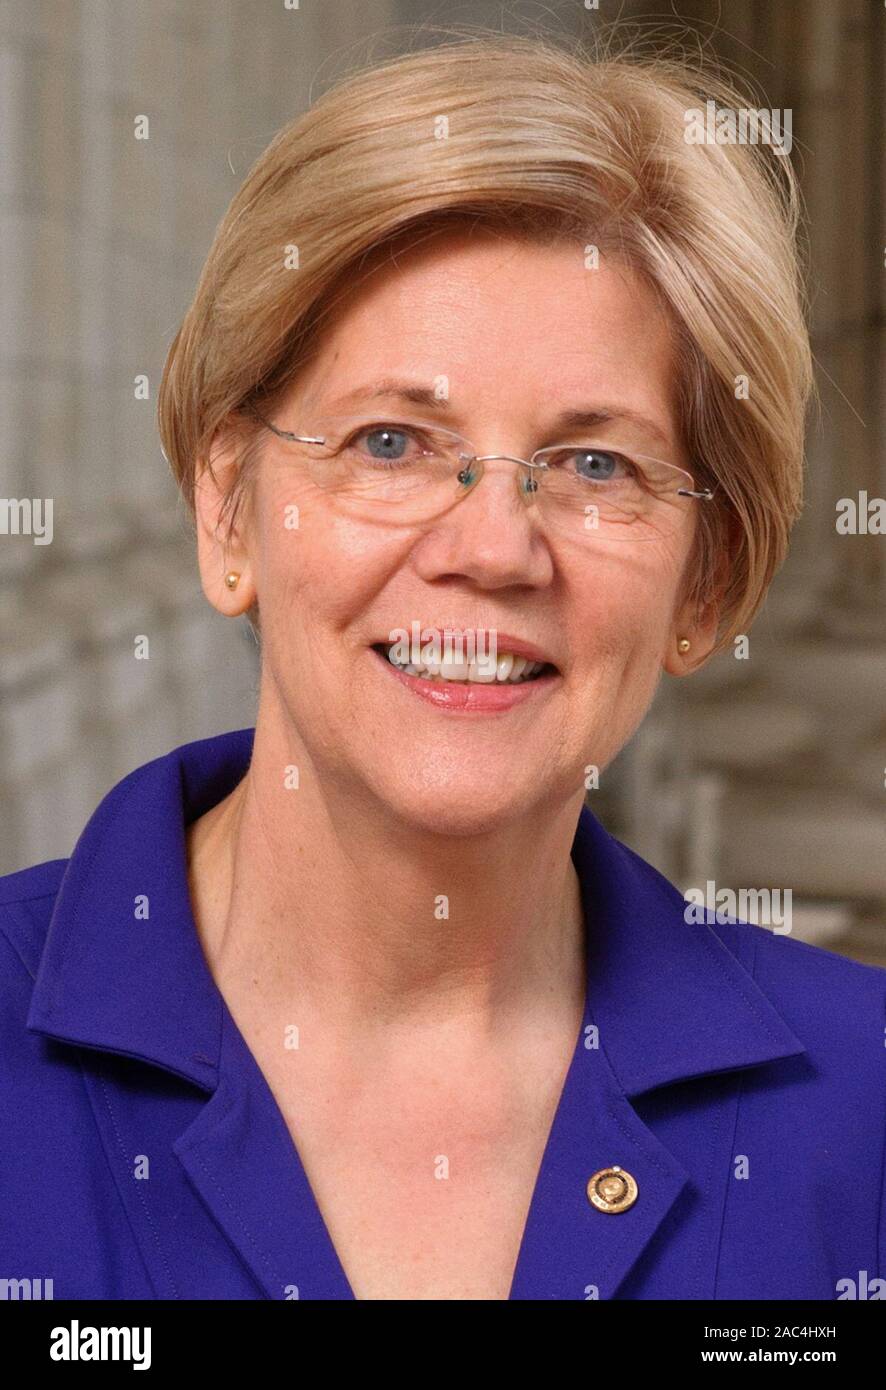 U.S. Senator Elizabeth Warren, Democrat, Massachusetts Stock Photo